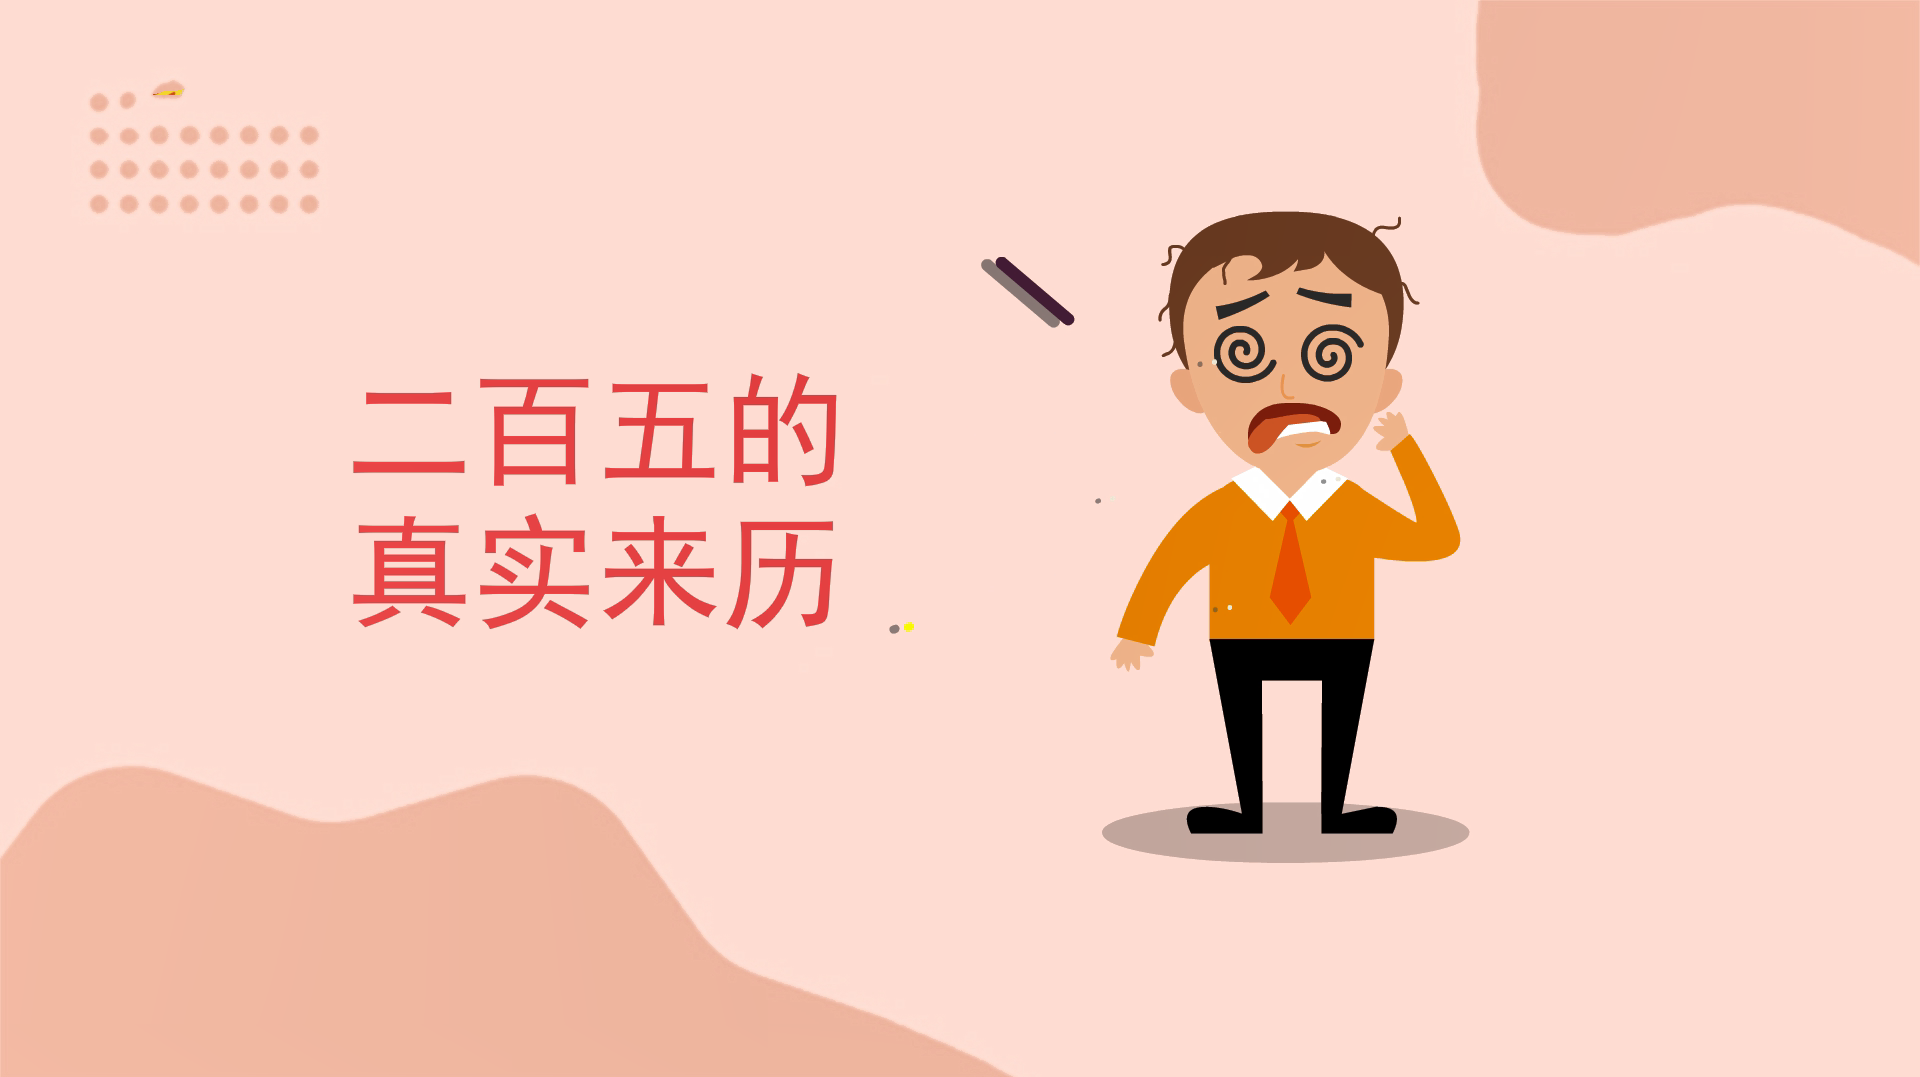 Asal Usul Idiom Tiongkok 250 (二百五 Er Bai Wu) » Idiom » Tionghoa.org ...